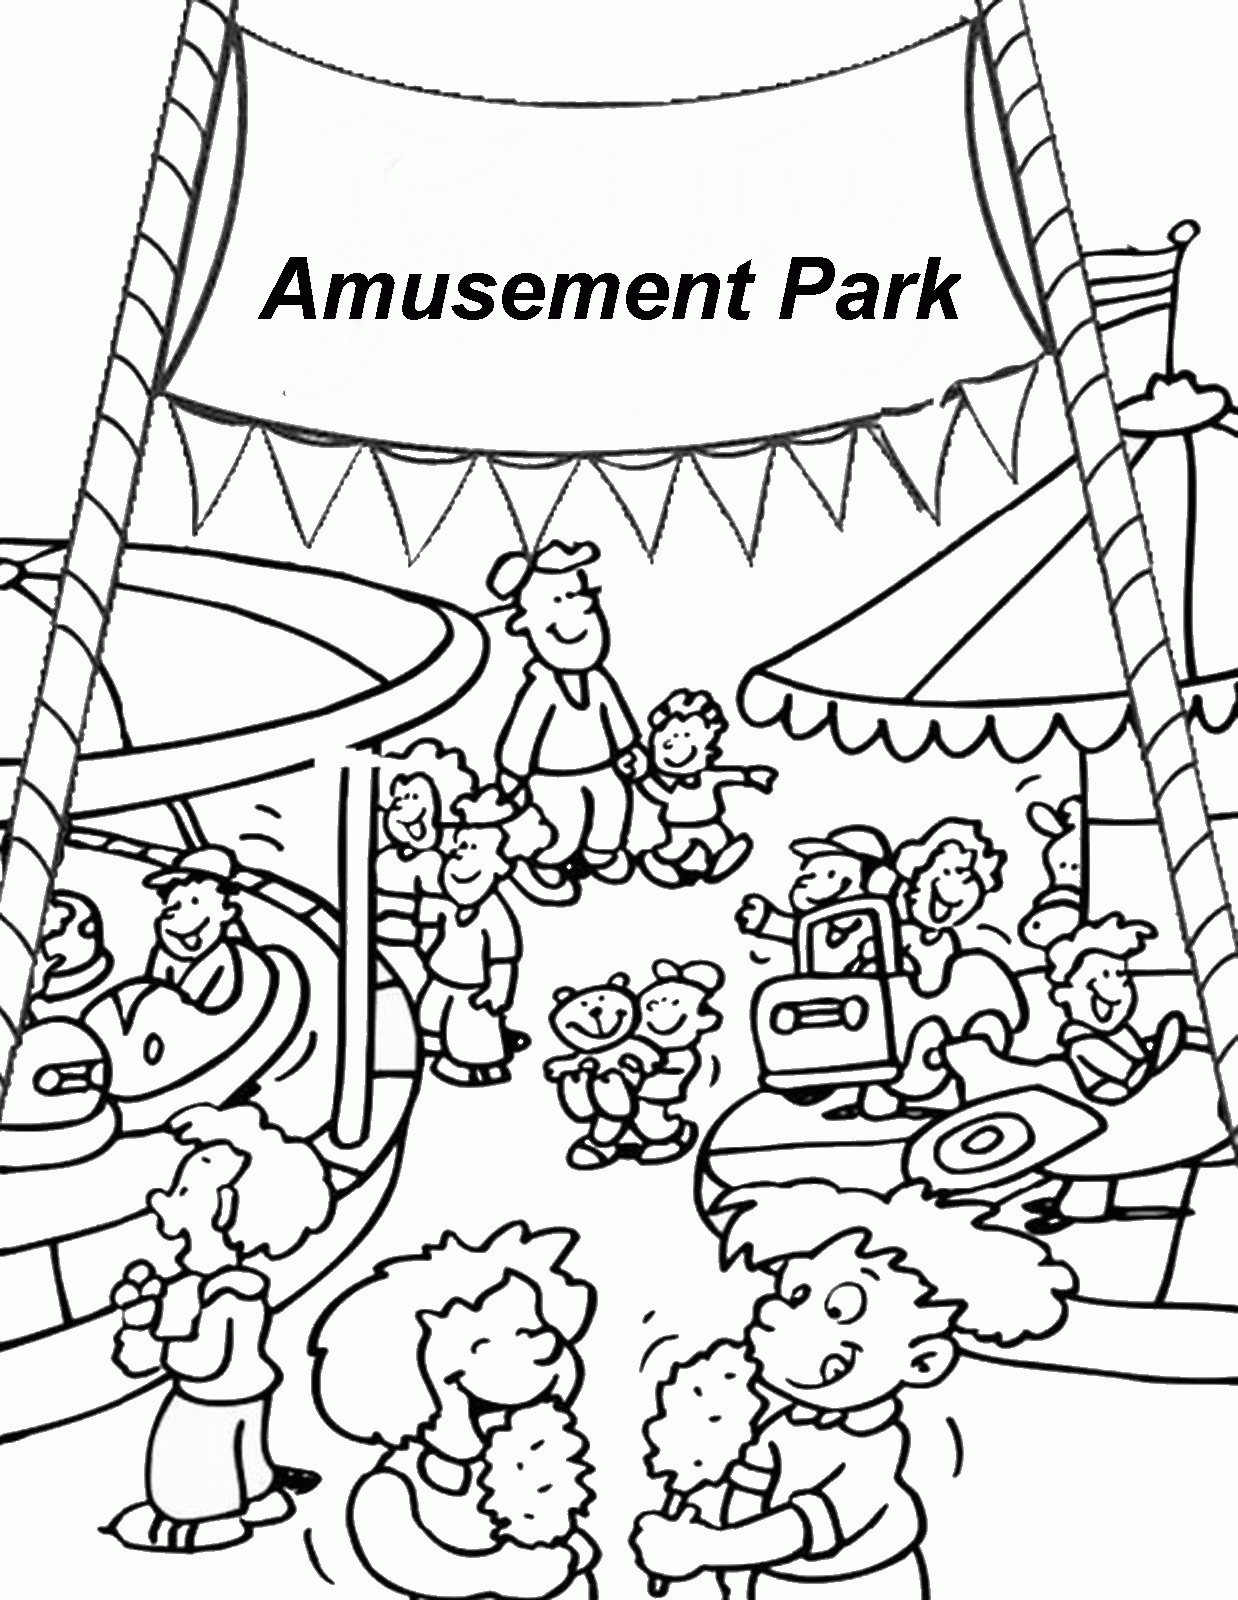 Amusement Park Coloring Pages Coloring Home